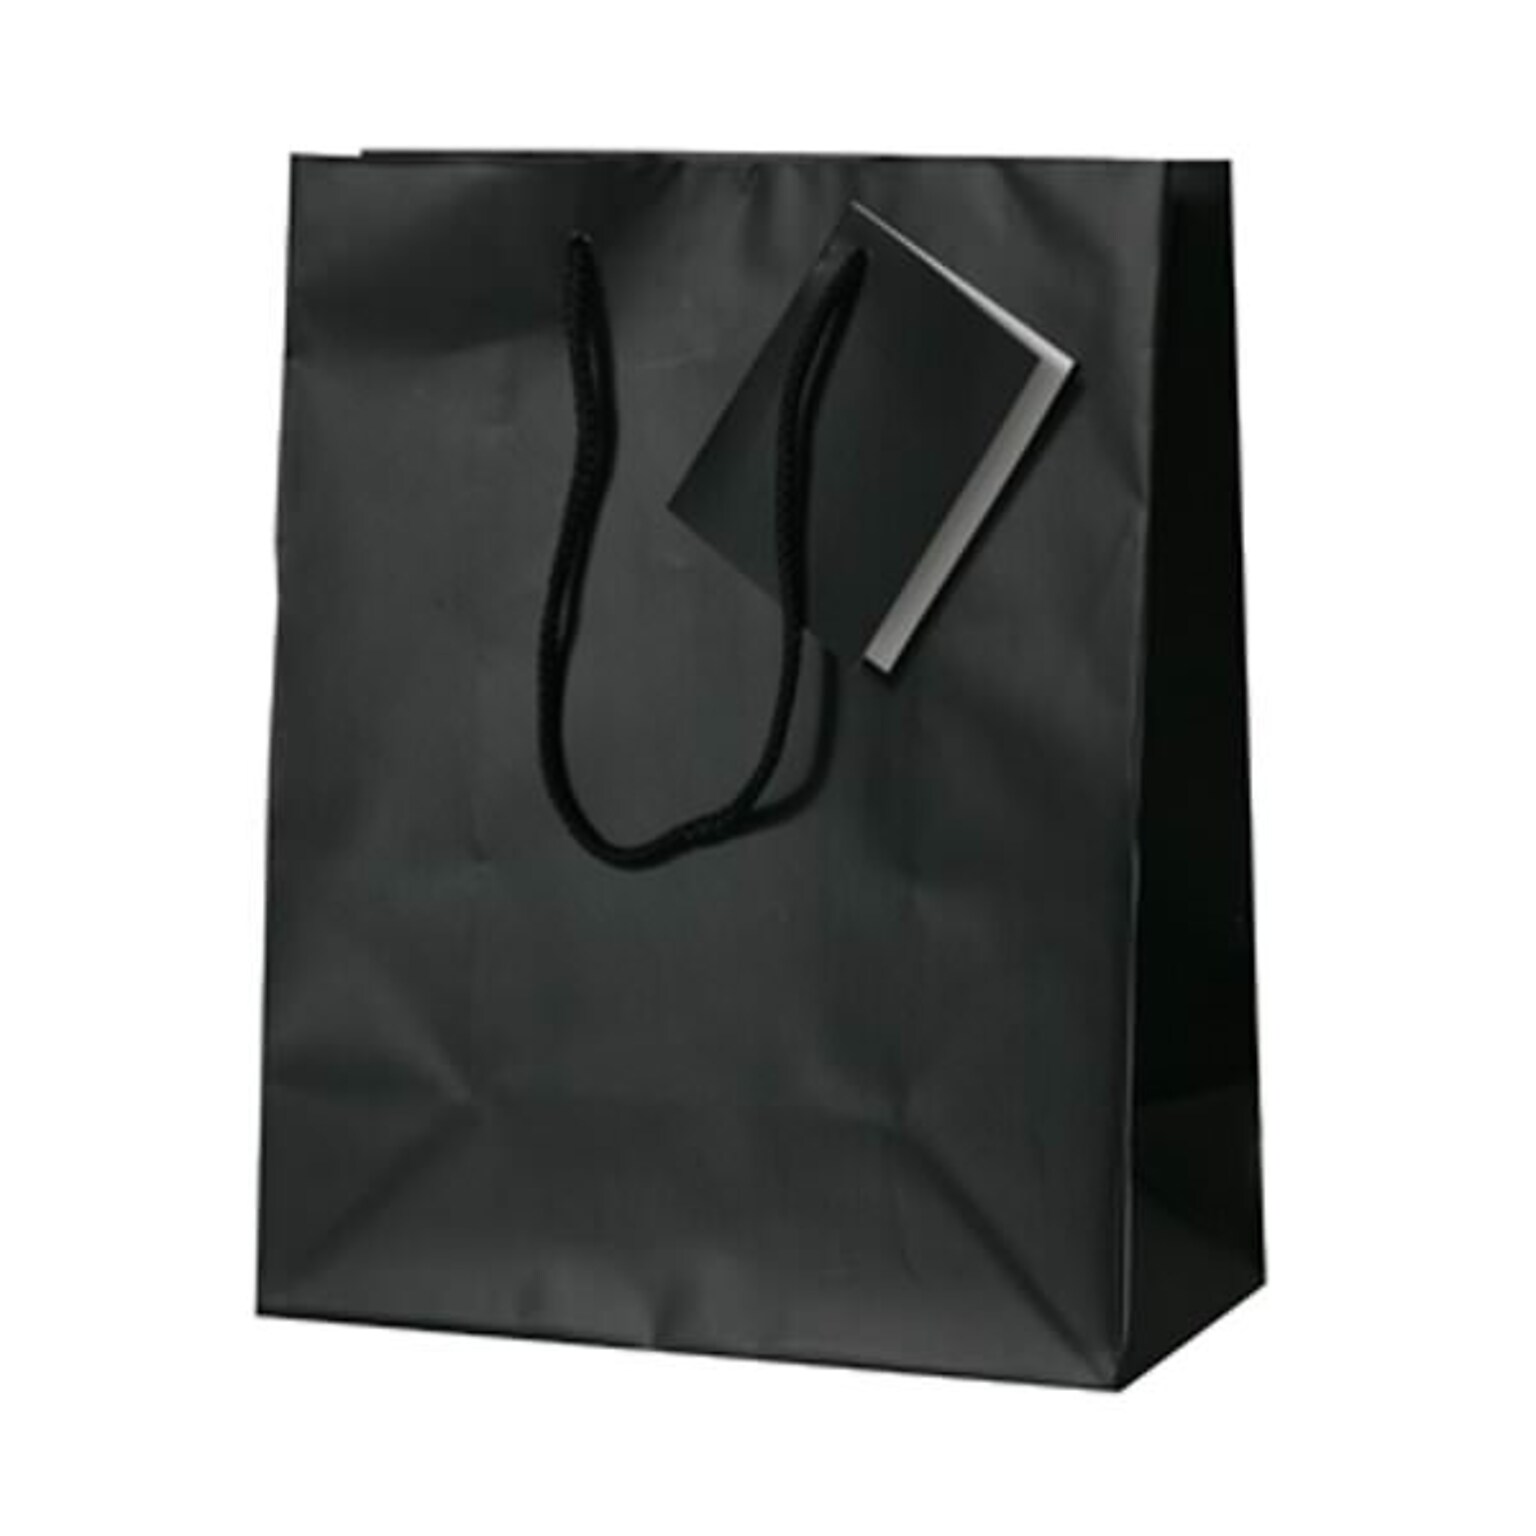 JAM PAPER Gift Bags with Rope Handles, Medium, 8 x 10 x 4, Black Matte, Bulk 100 Bags/Pack (672MABL100)